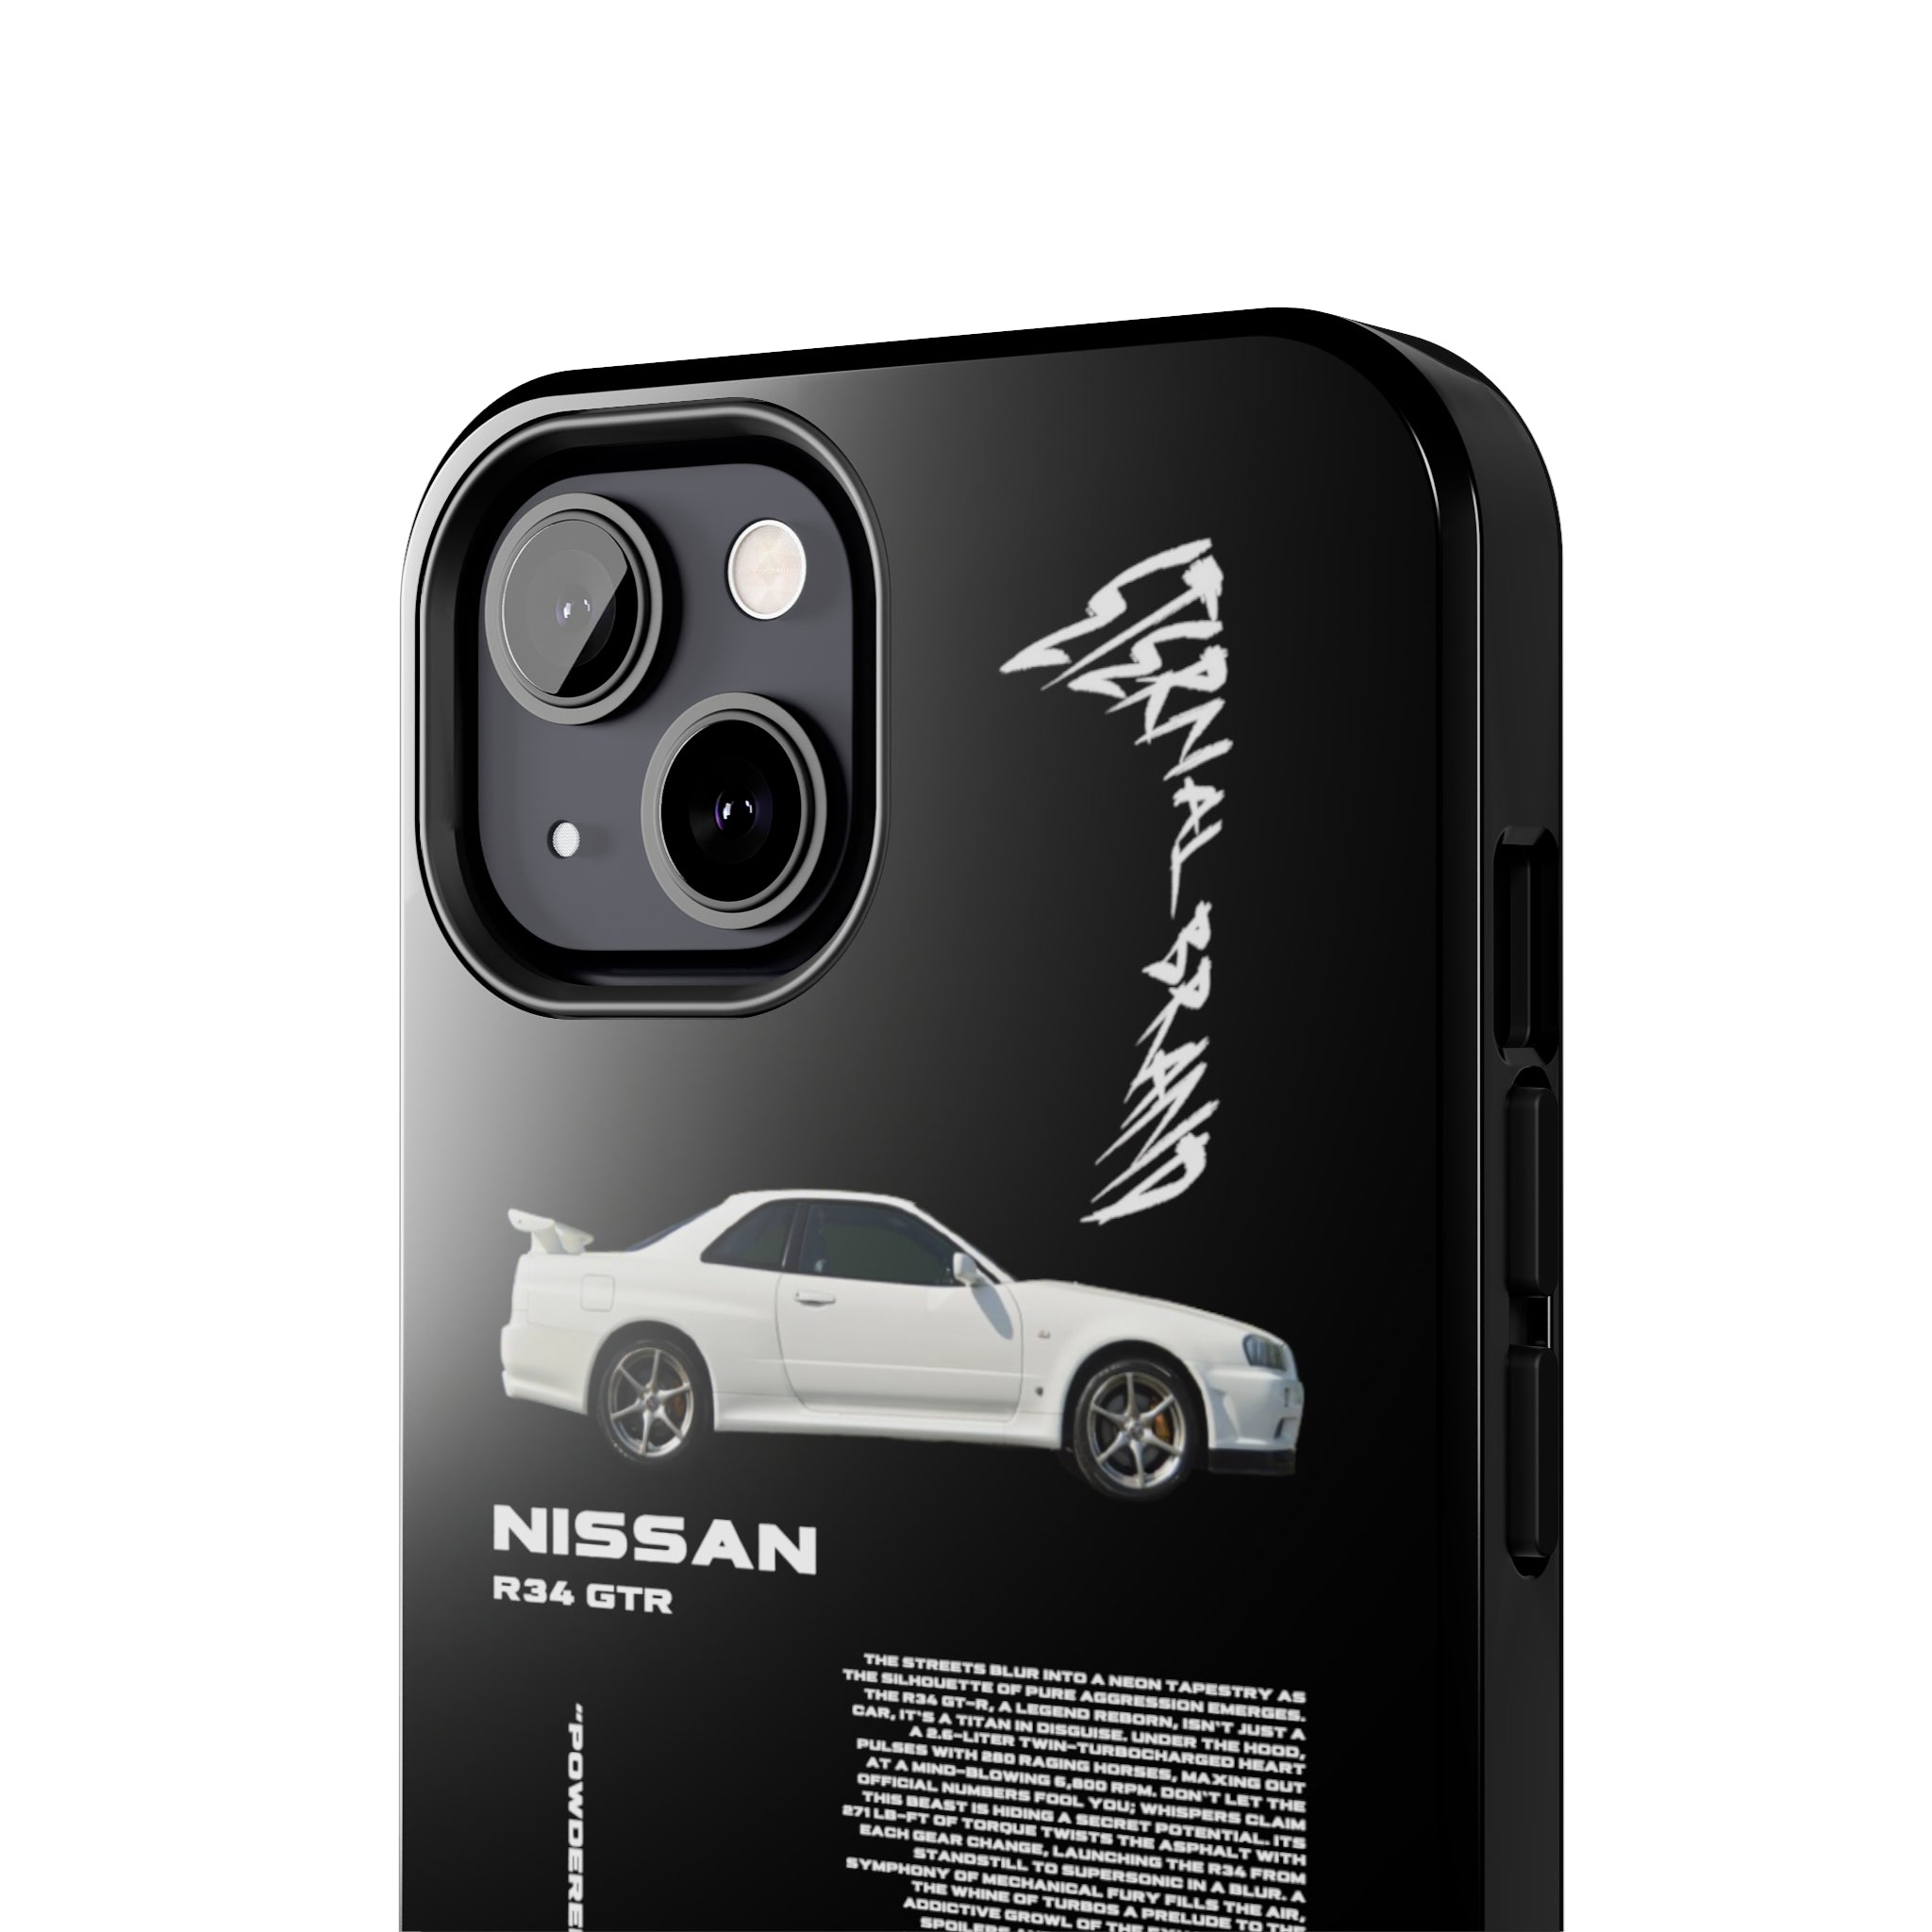 Nissan R34 GTR "White" "Noir"